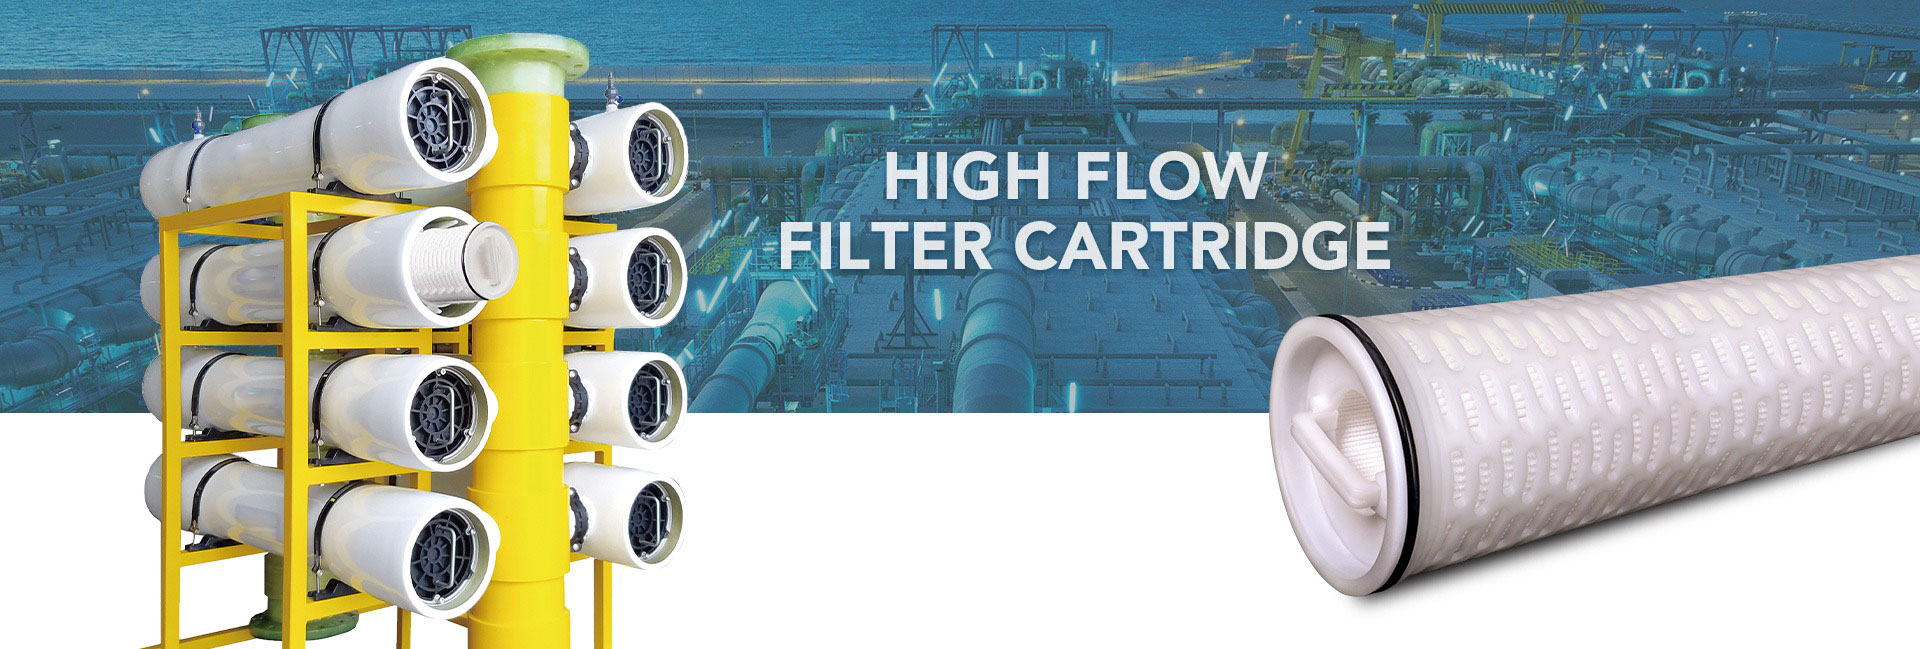 high_flow_filter_cartridge_banner